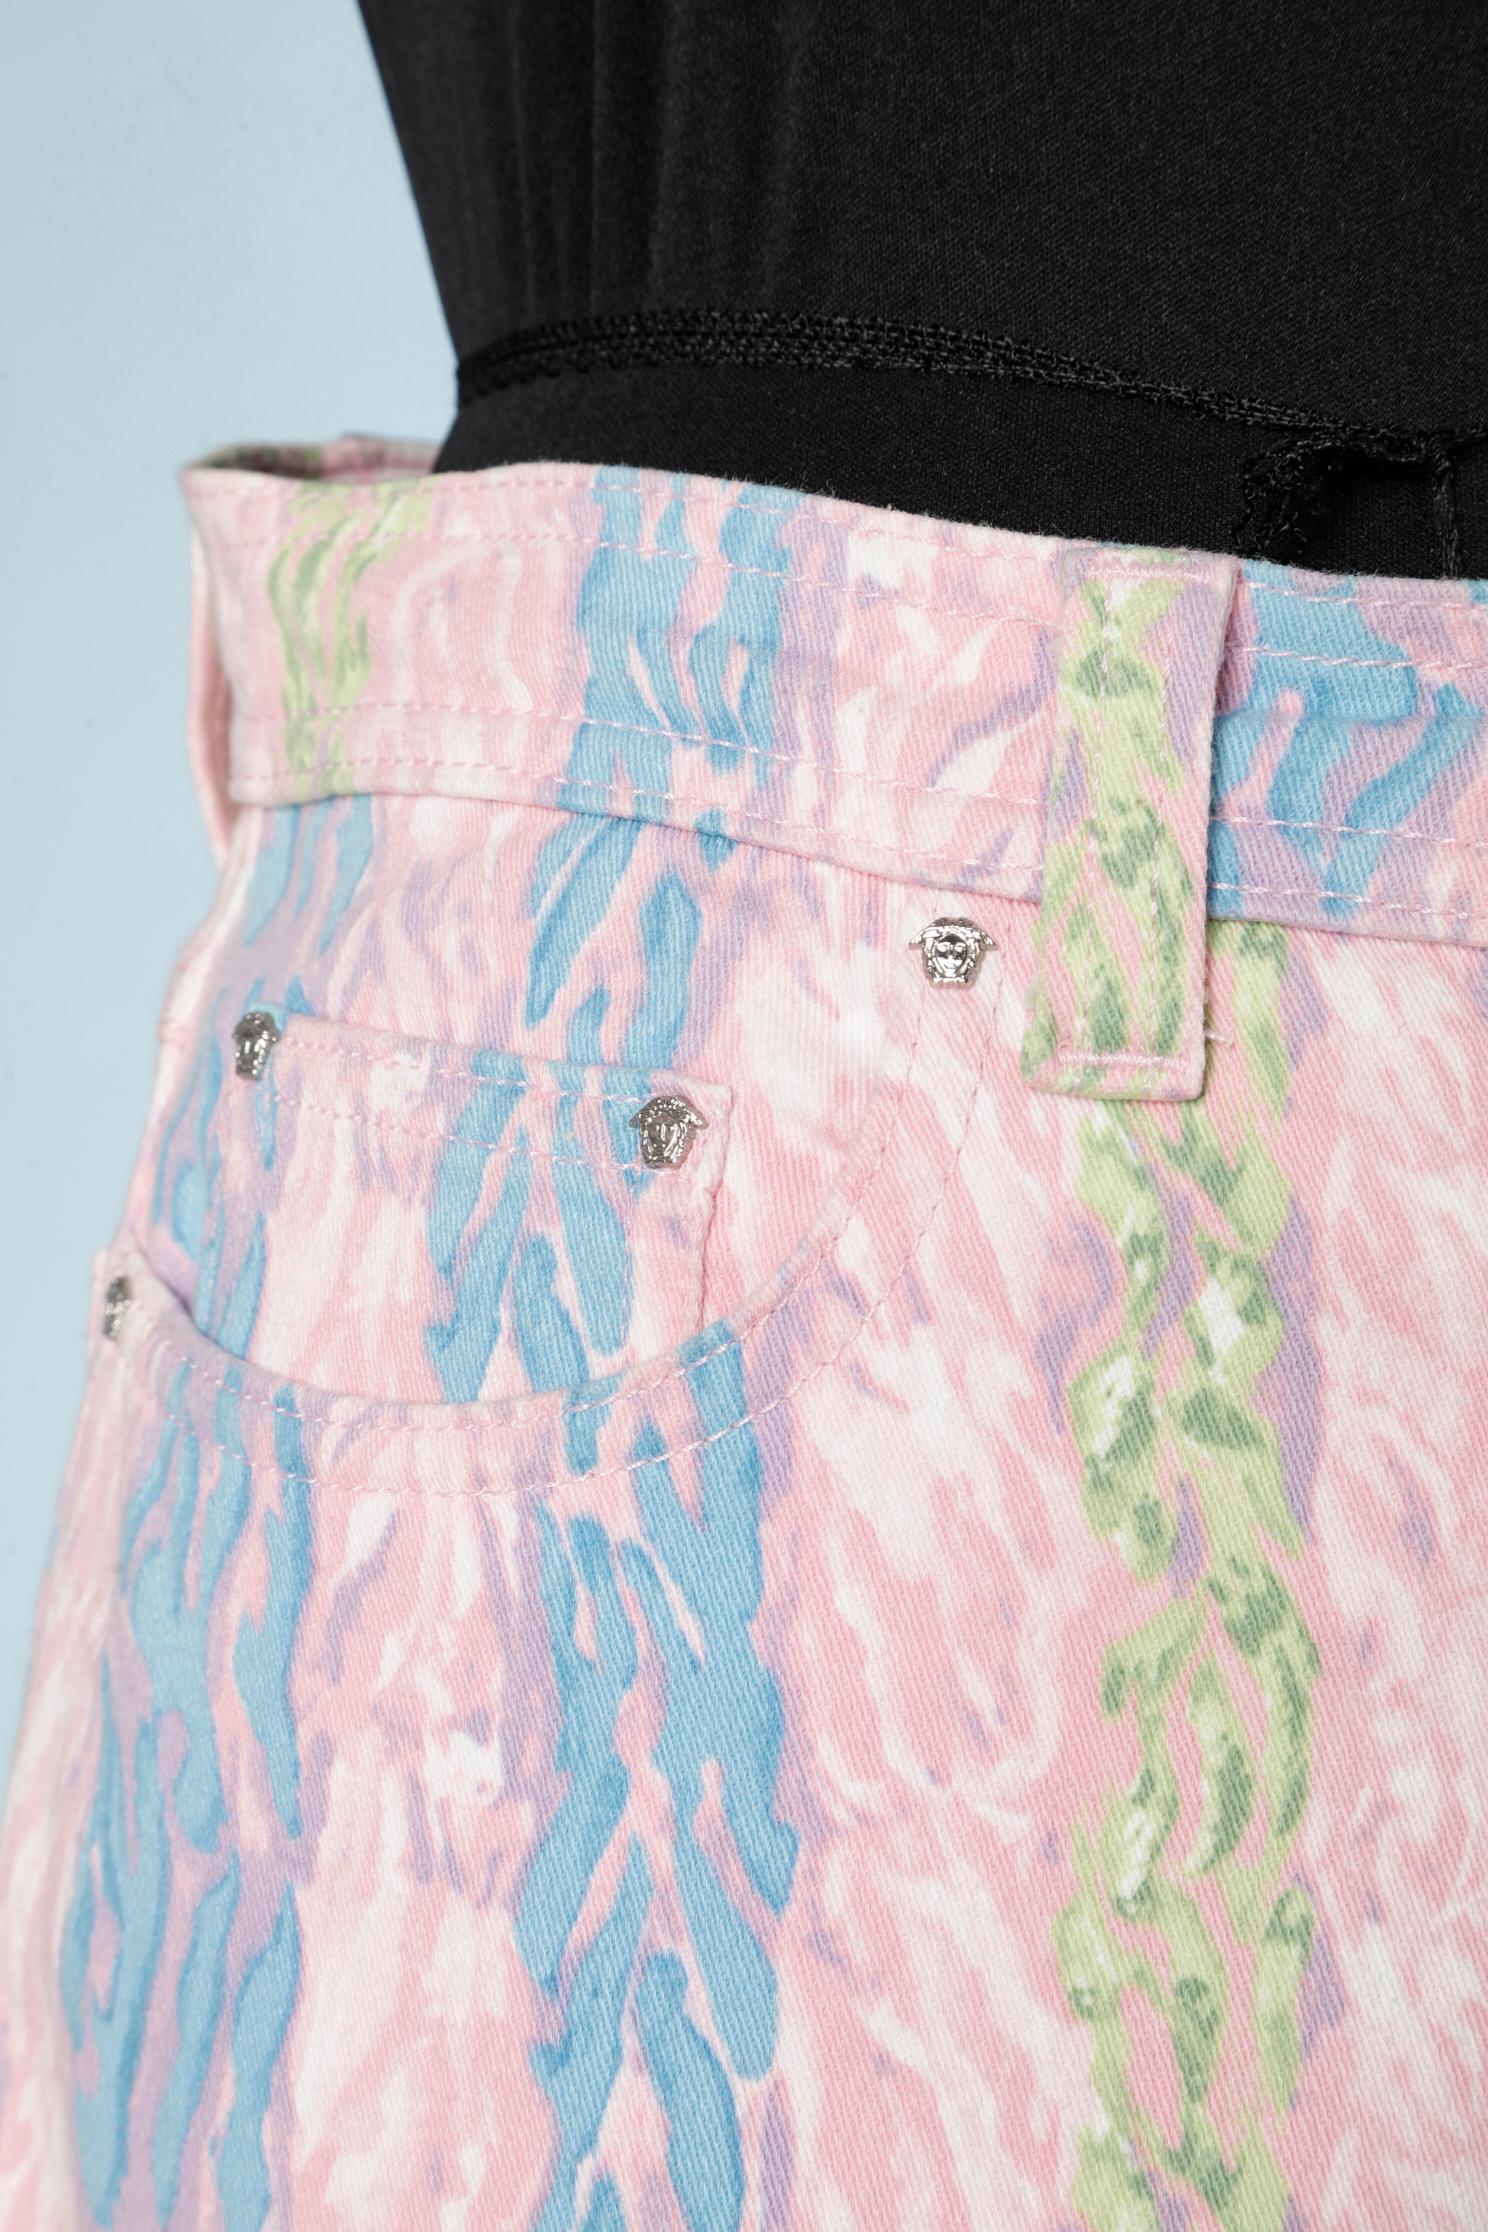 Pantalon en jean imprimé pastel avec clous Medusa et boutons de la marque. Balise d'authentification 